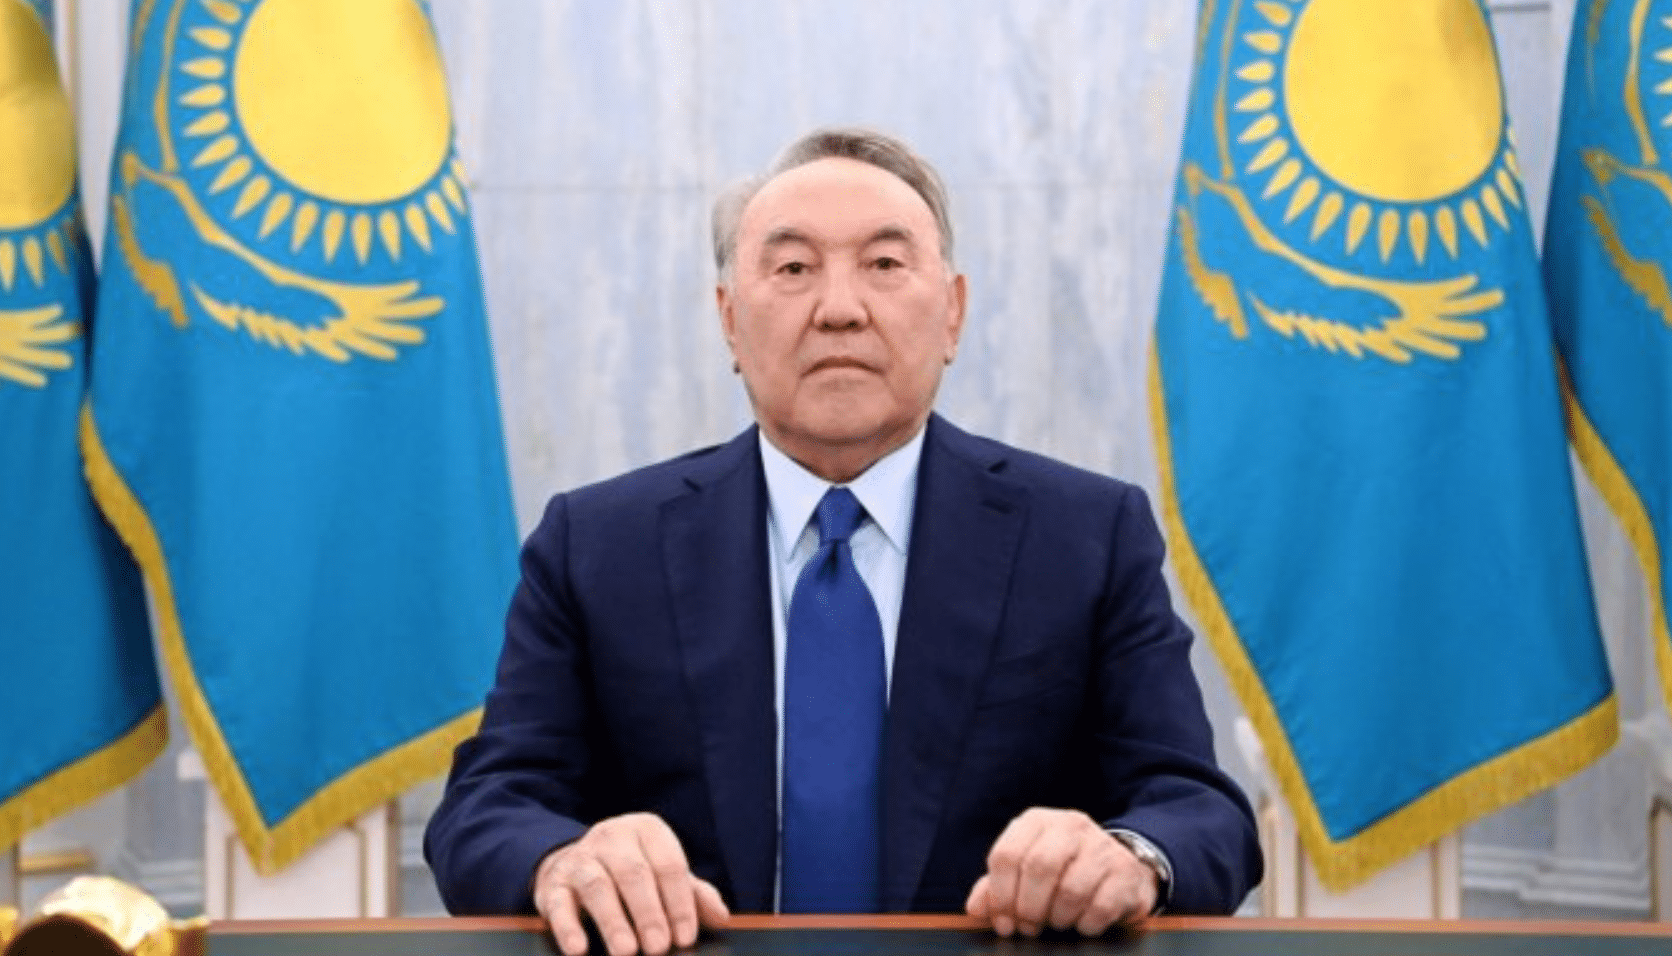 Ղազախստանի խորհրդարանի ստորին պալատը Նազարբաևին զրկել է Անվտանգության խորհրդի ցմահ նախագահությունից